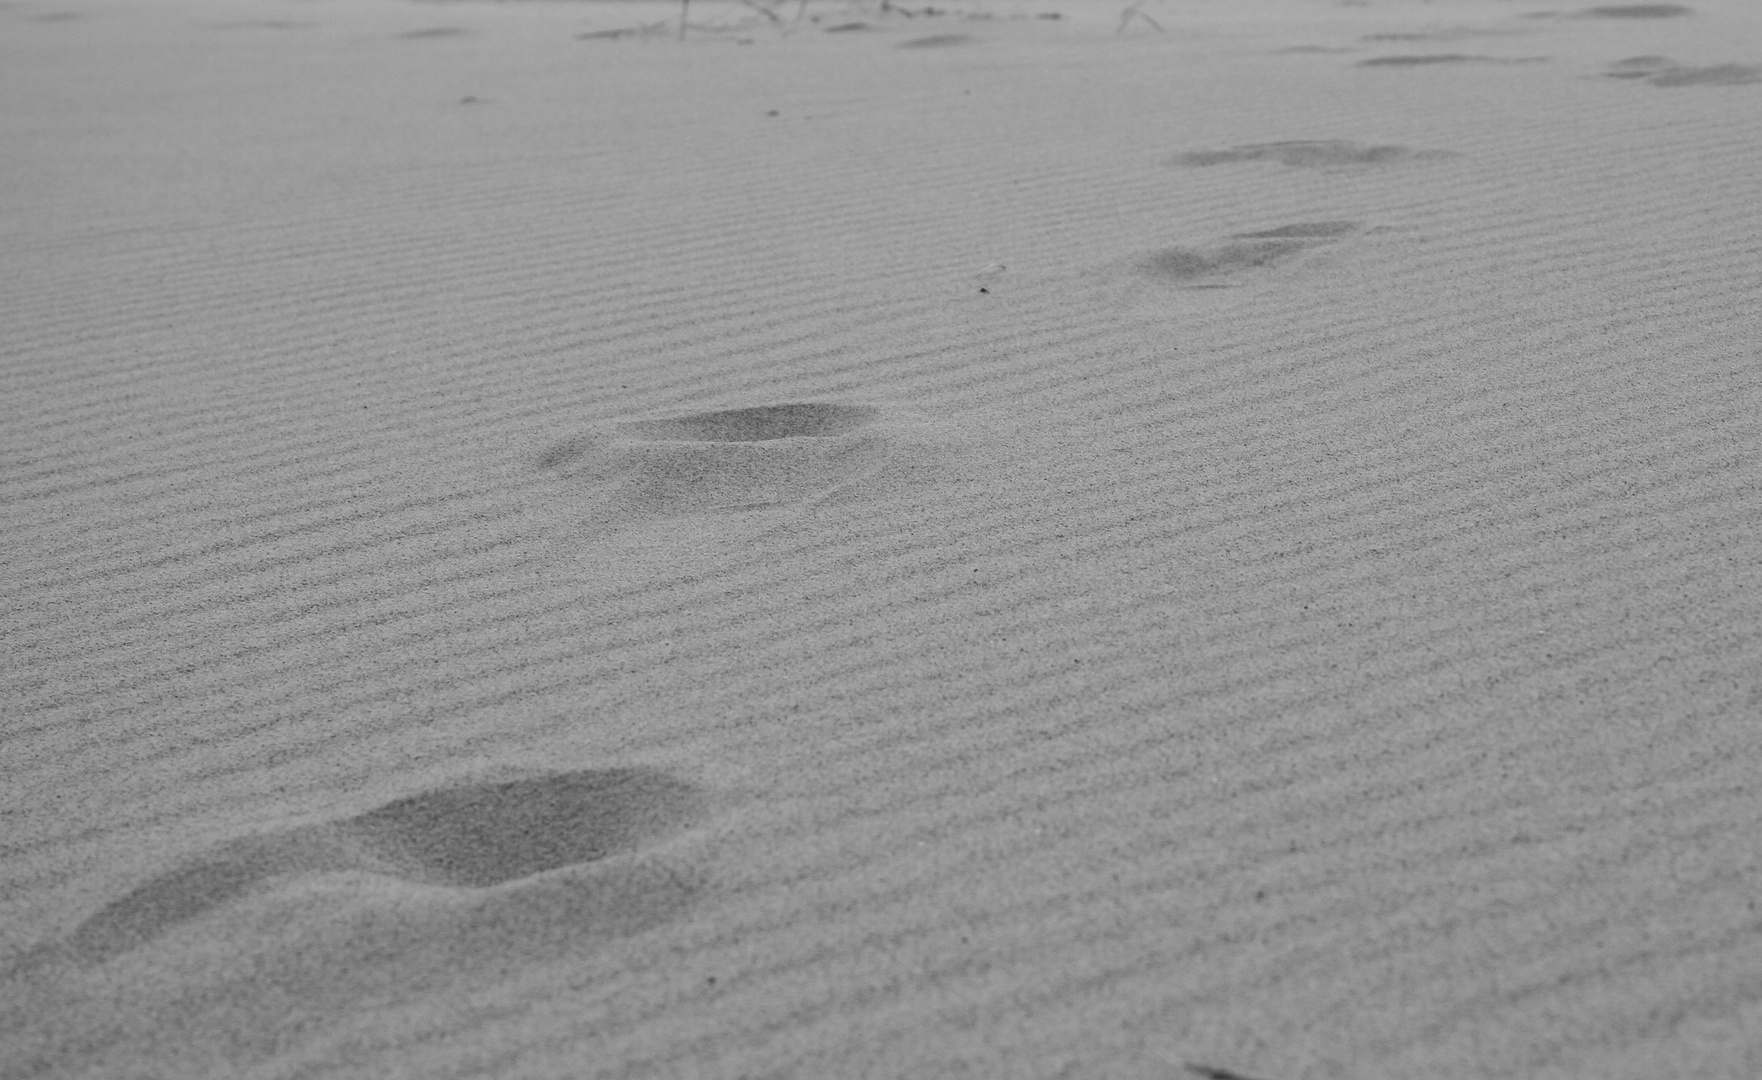 Spuren im Sand - footprints at the beach